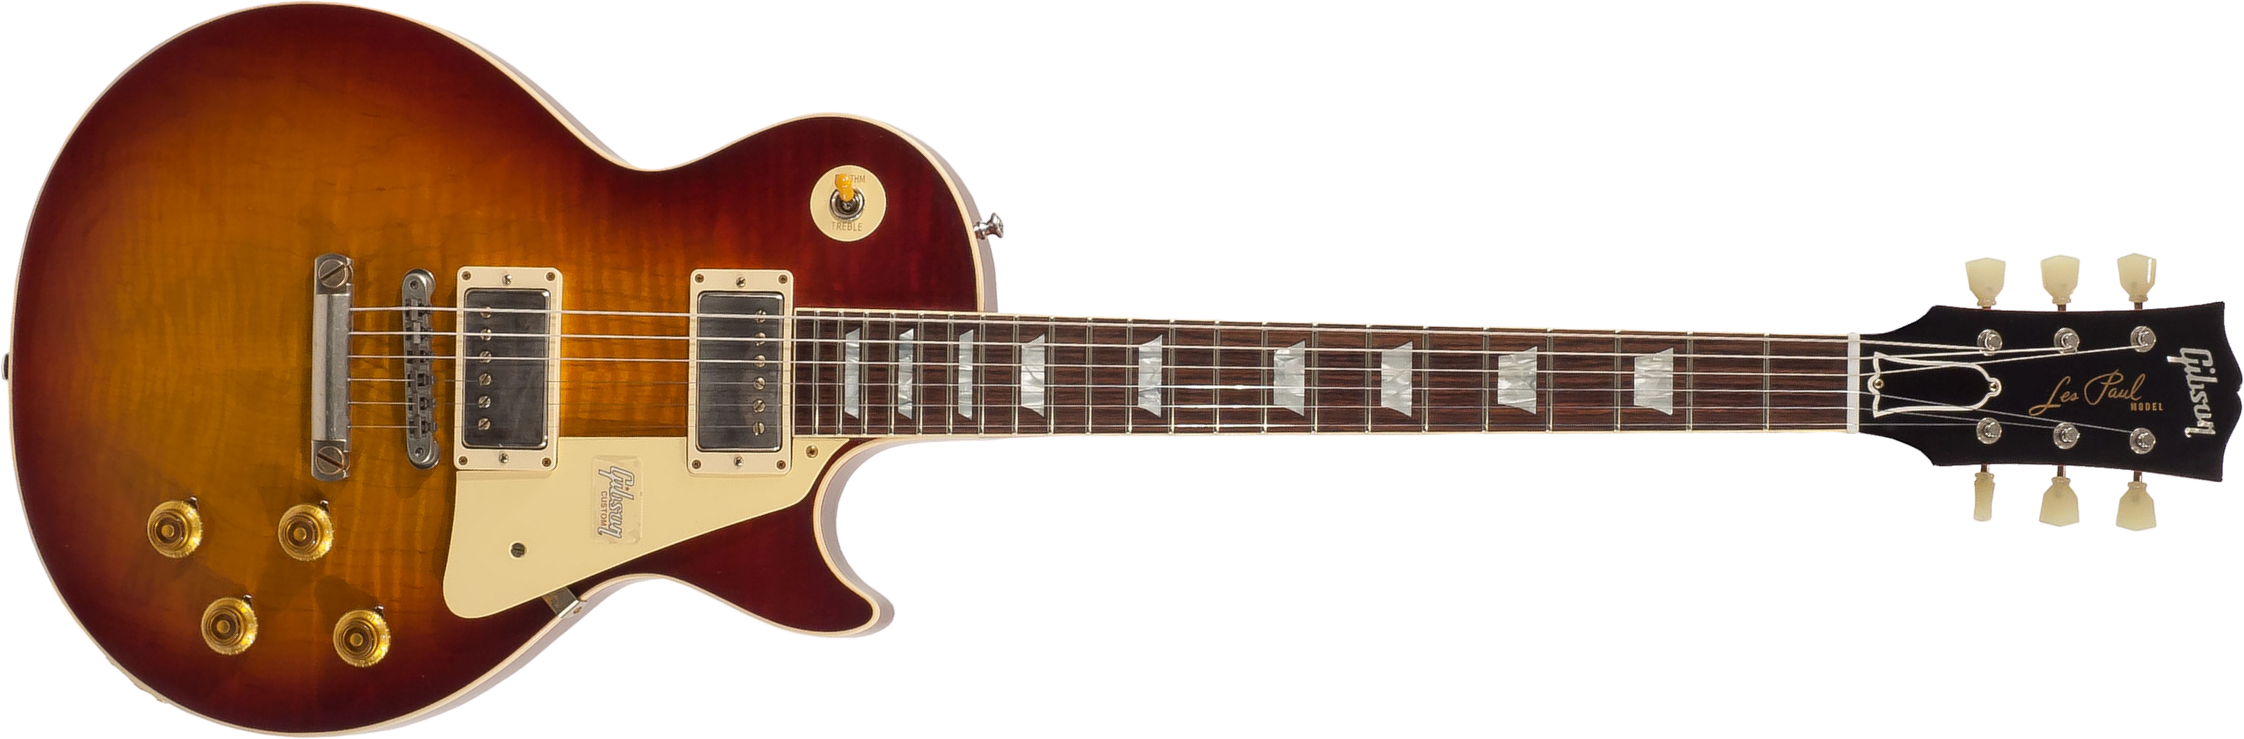 Gibson Custom Shop Les Paul Standard 1959 2h Ht Rw - Vos Vintage Cherry Sunburst - Single-Cut-E-Gitarre - Main picture